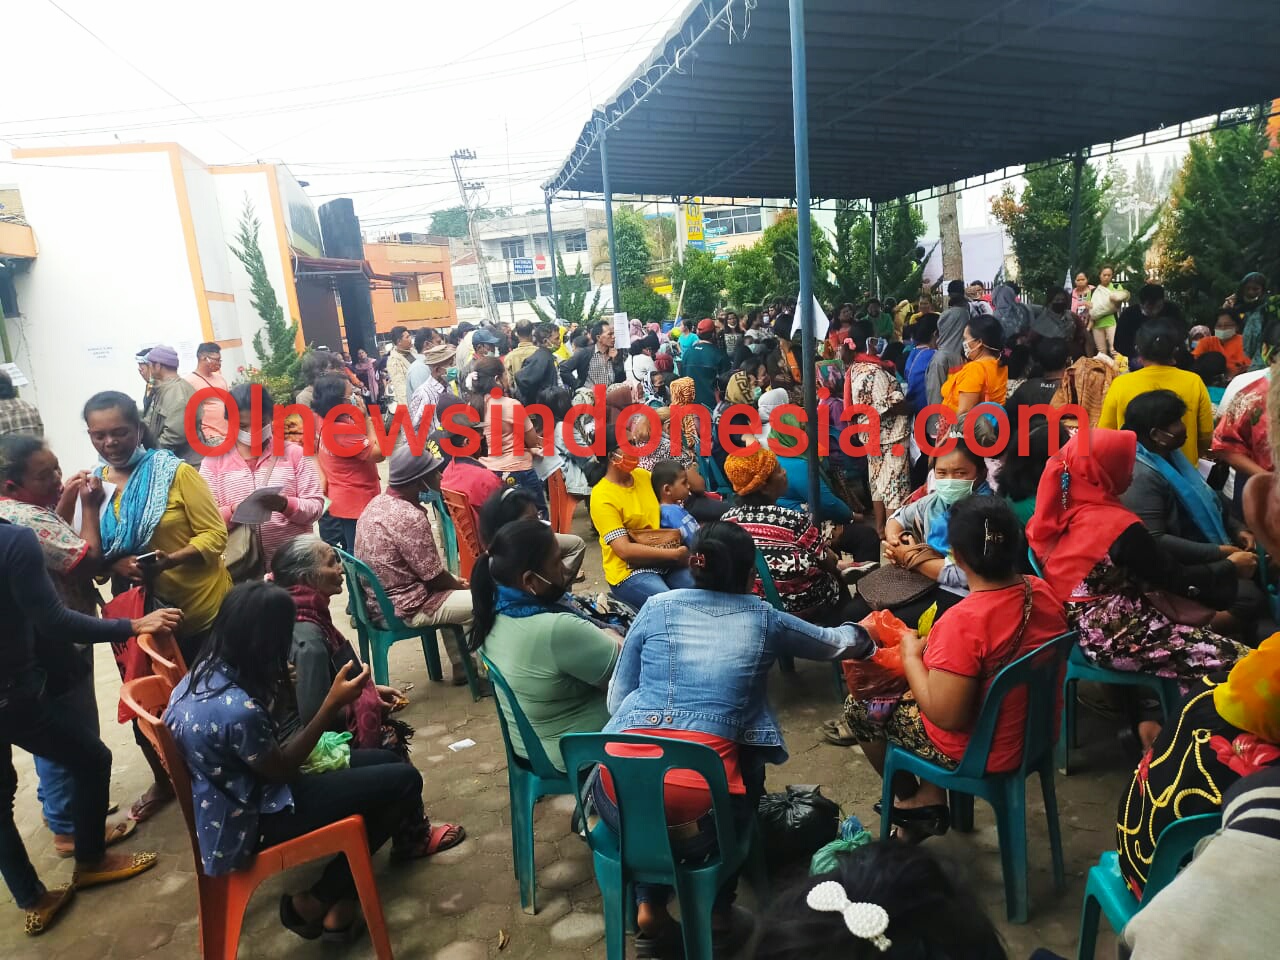 Ket foto : tampak Ratusan Warga berdesakan di kantor Pos Kabanjahe untuk menerima Bantuan BST dari pemerintah yang tidak menghiraukan protokoler kesehatan penanganan Covid-19, Jumat (12/06) 2020 (Ist)